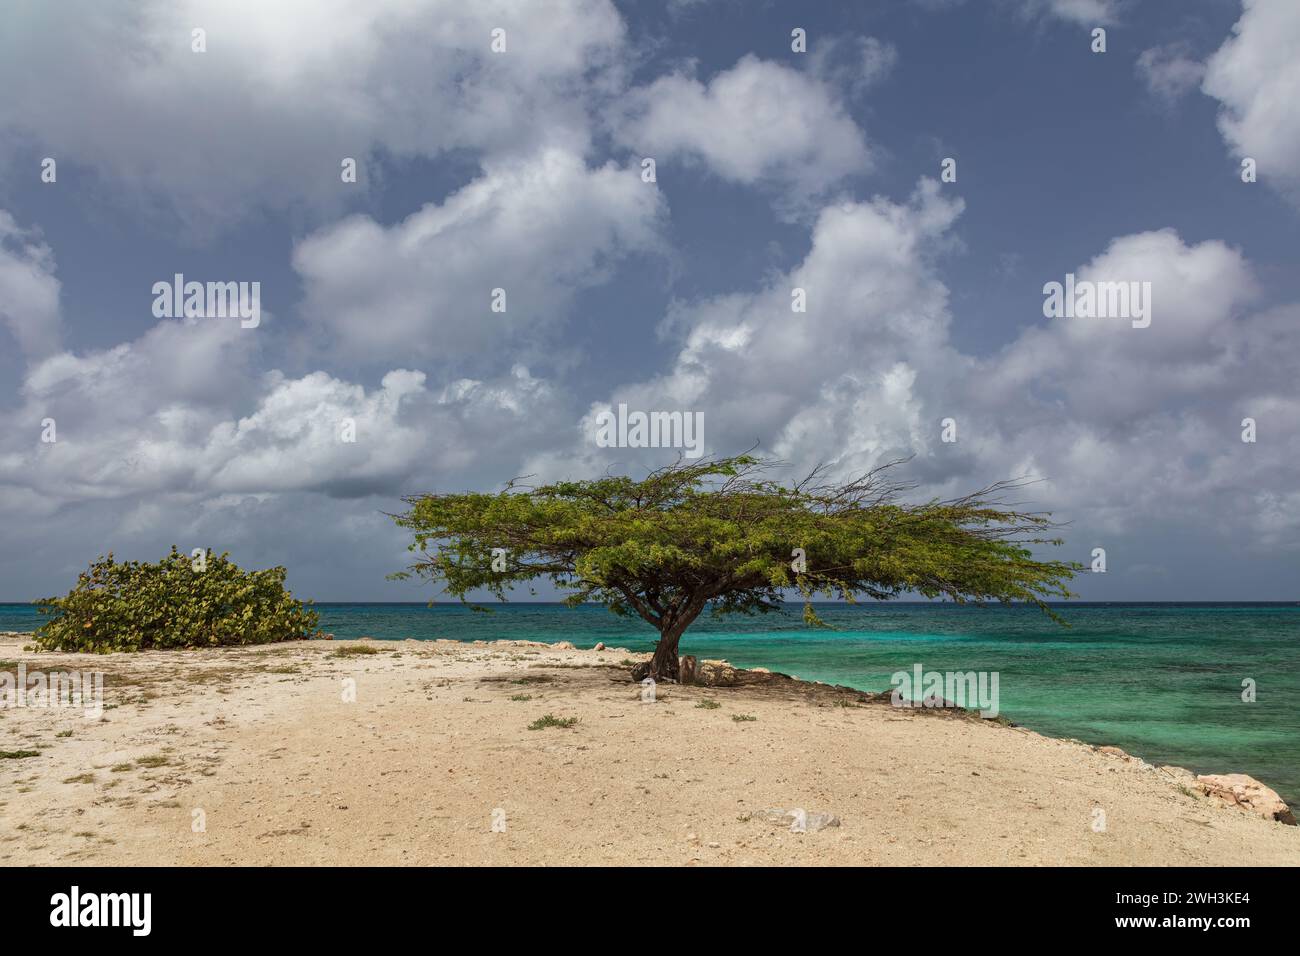 L'albero di Fofoti e la vicina macchia sulla spiaggia sabbiosa dell'isola di Aruba. Oceano verde smeraldo, cielo nuvoloso blu sullo sfondo. Foto Stock